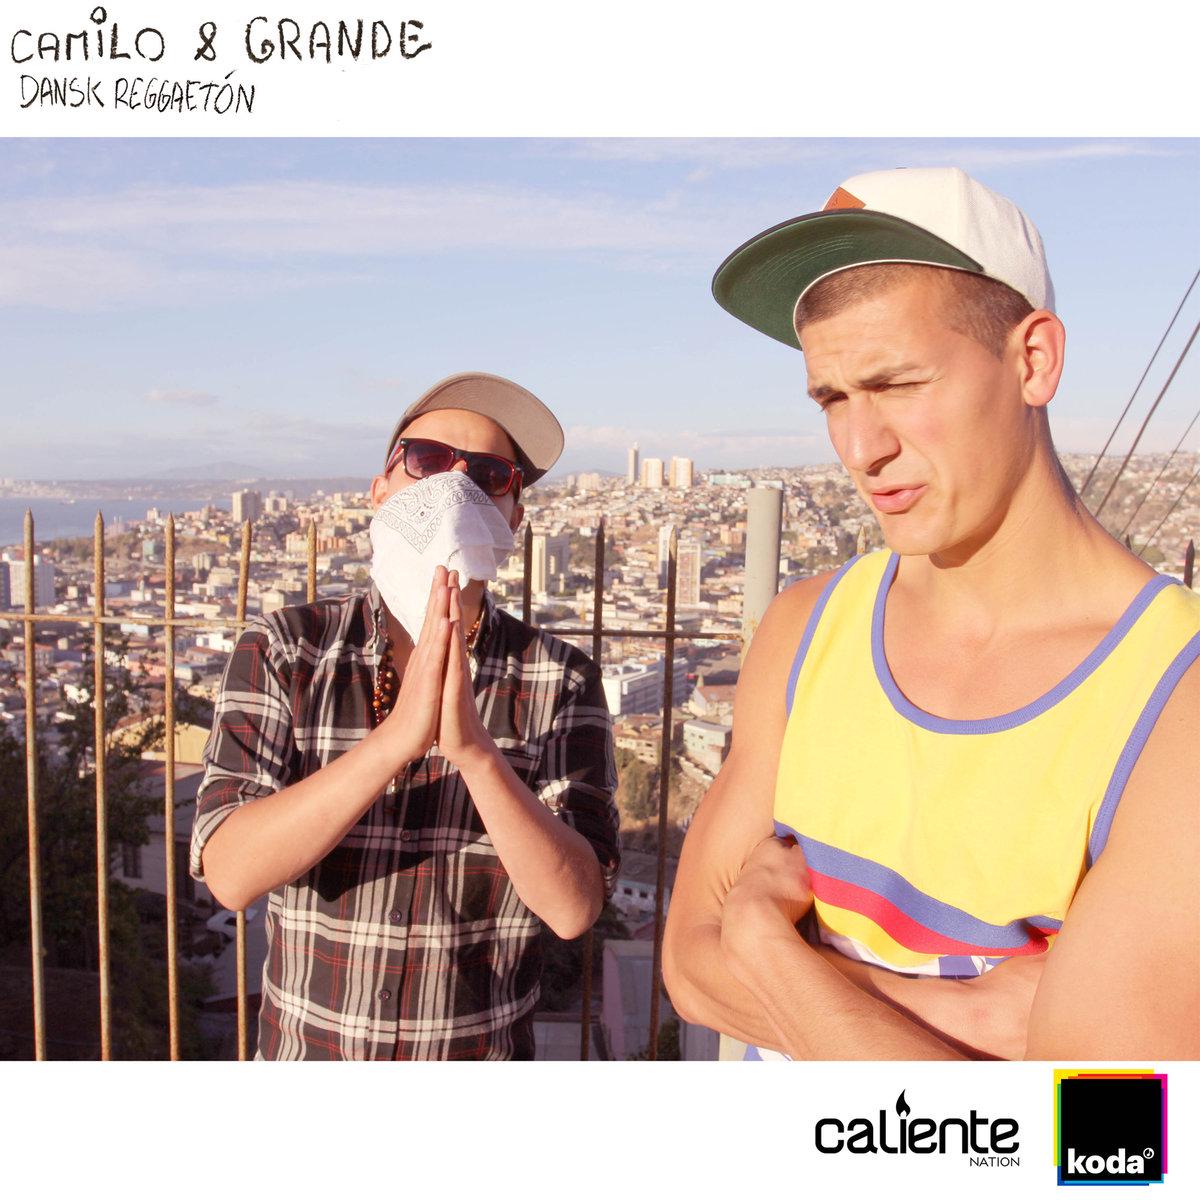 Camilo & Grande